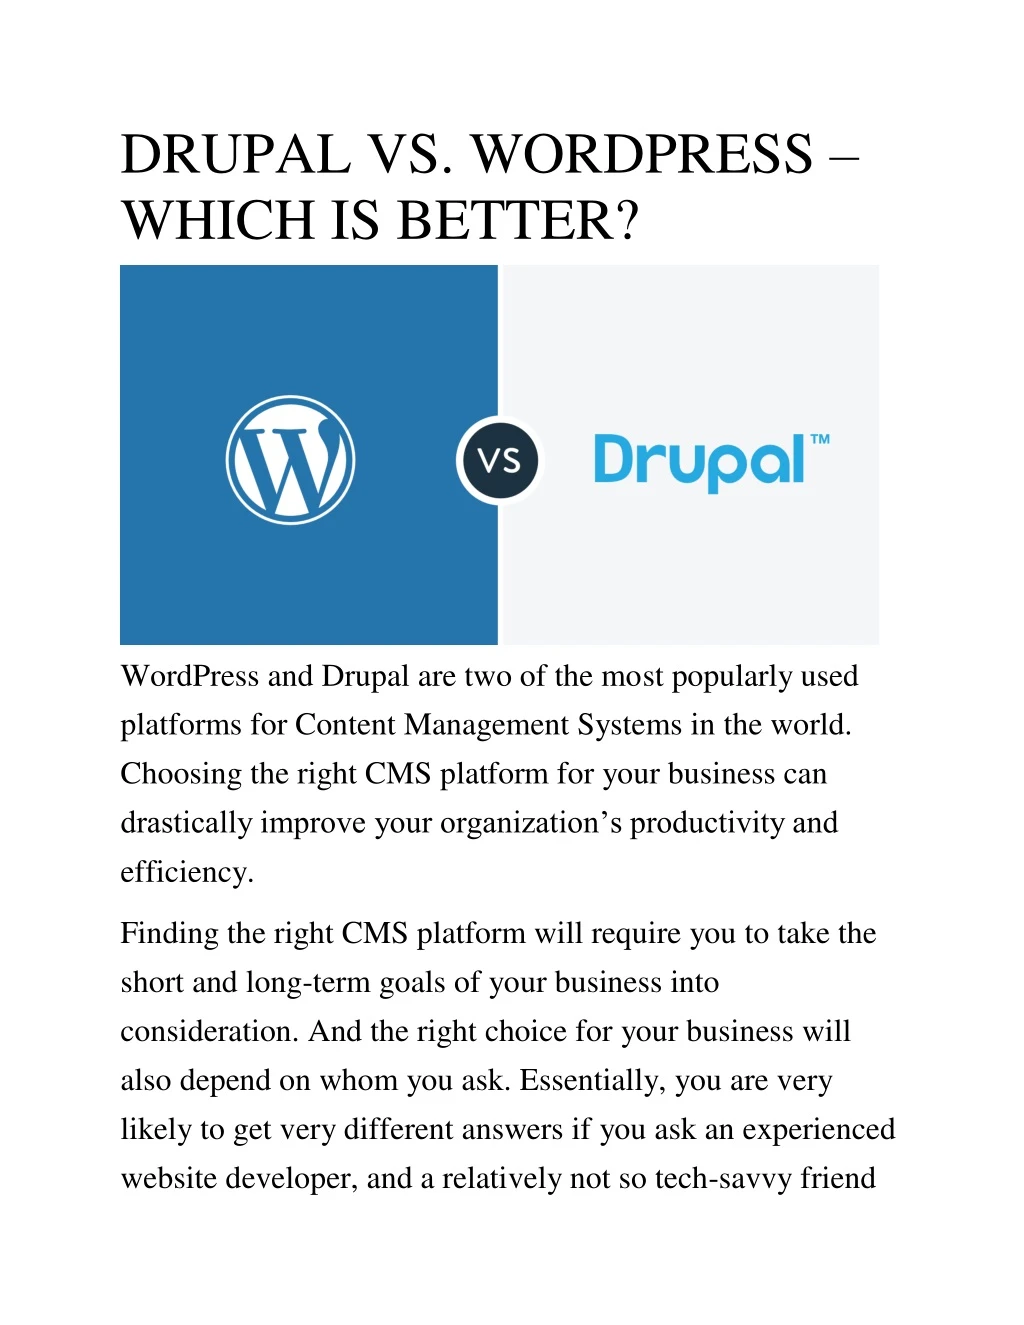 drupal vs wordpress which is better